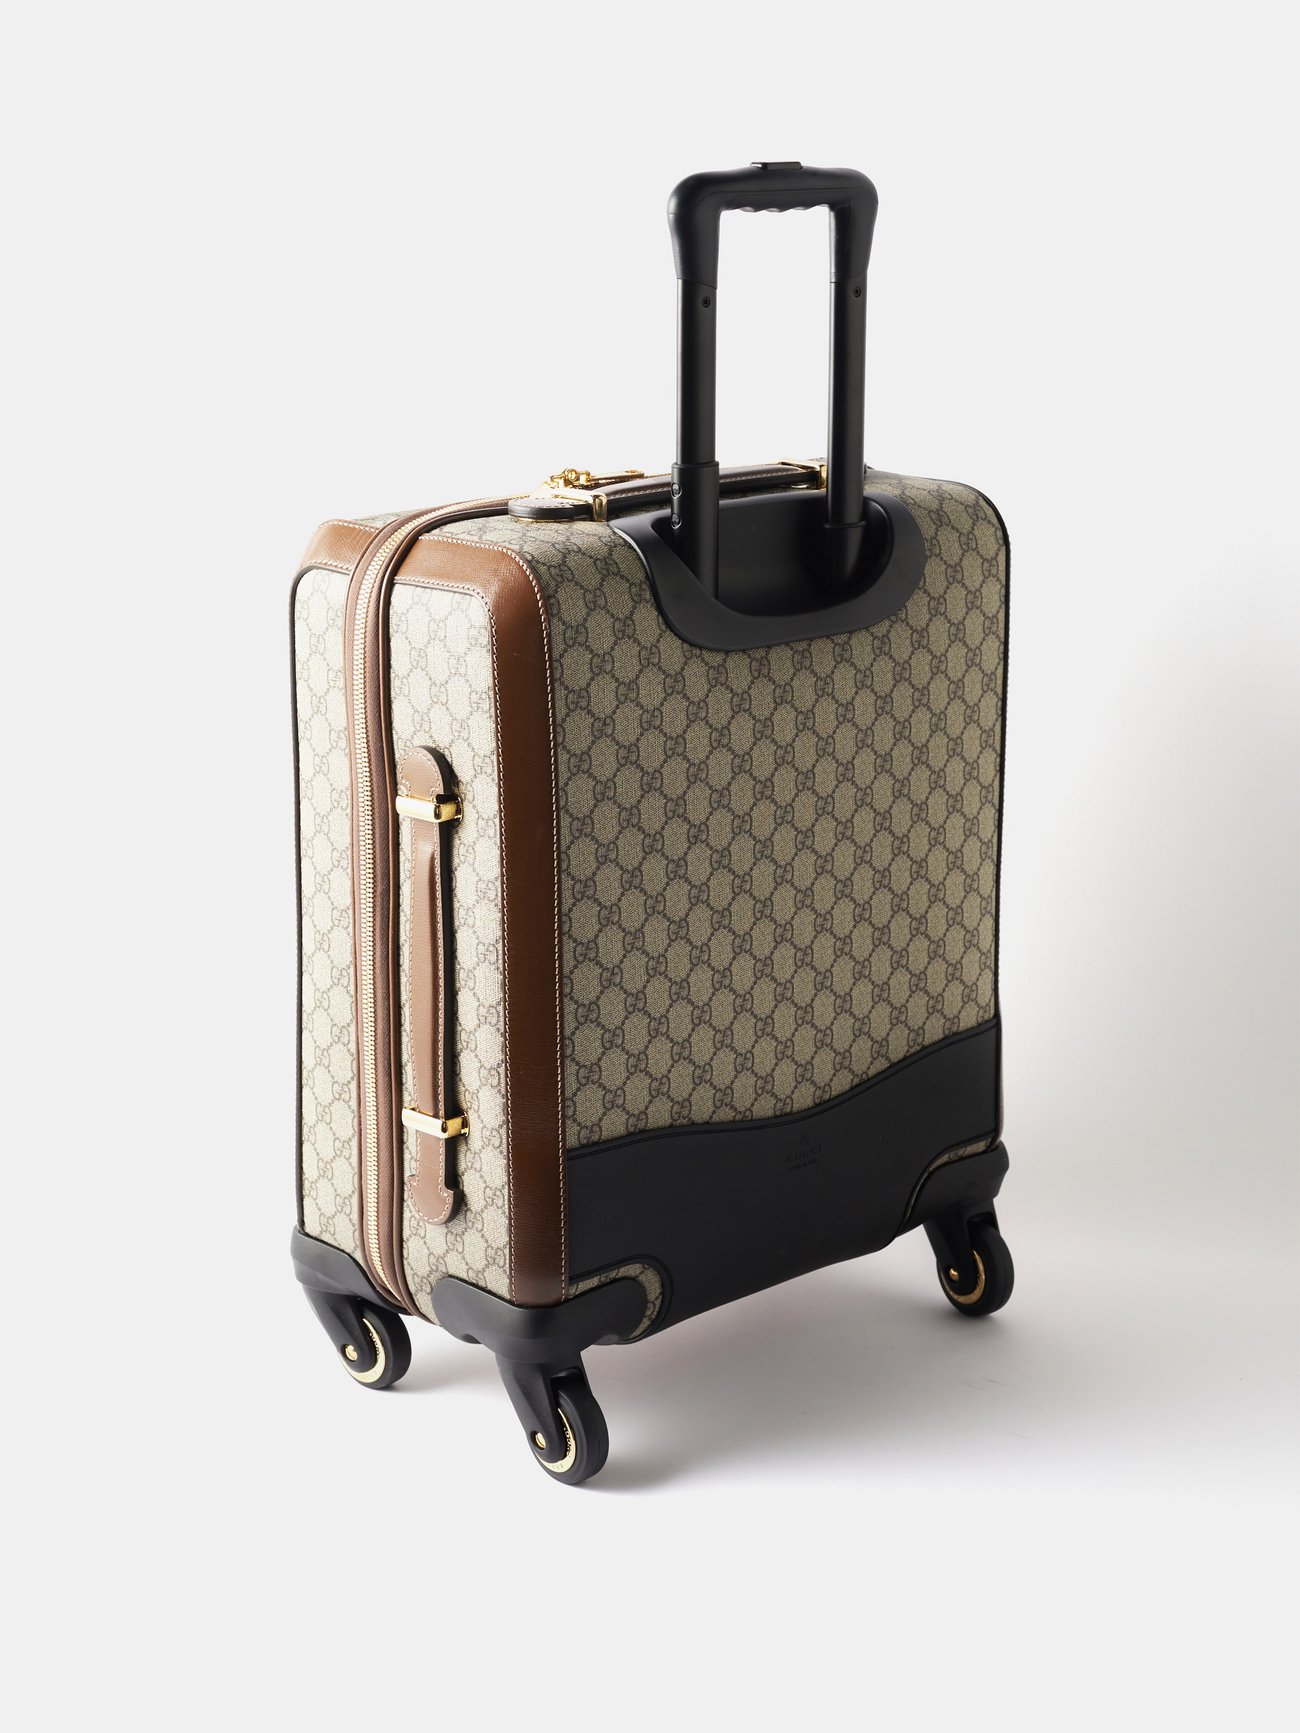 Beige GG Supreme canvas cabin suitcase, Gucci